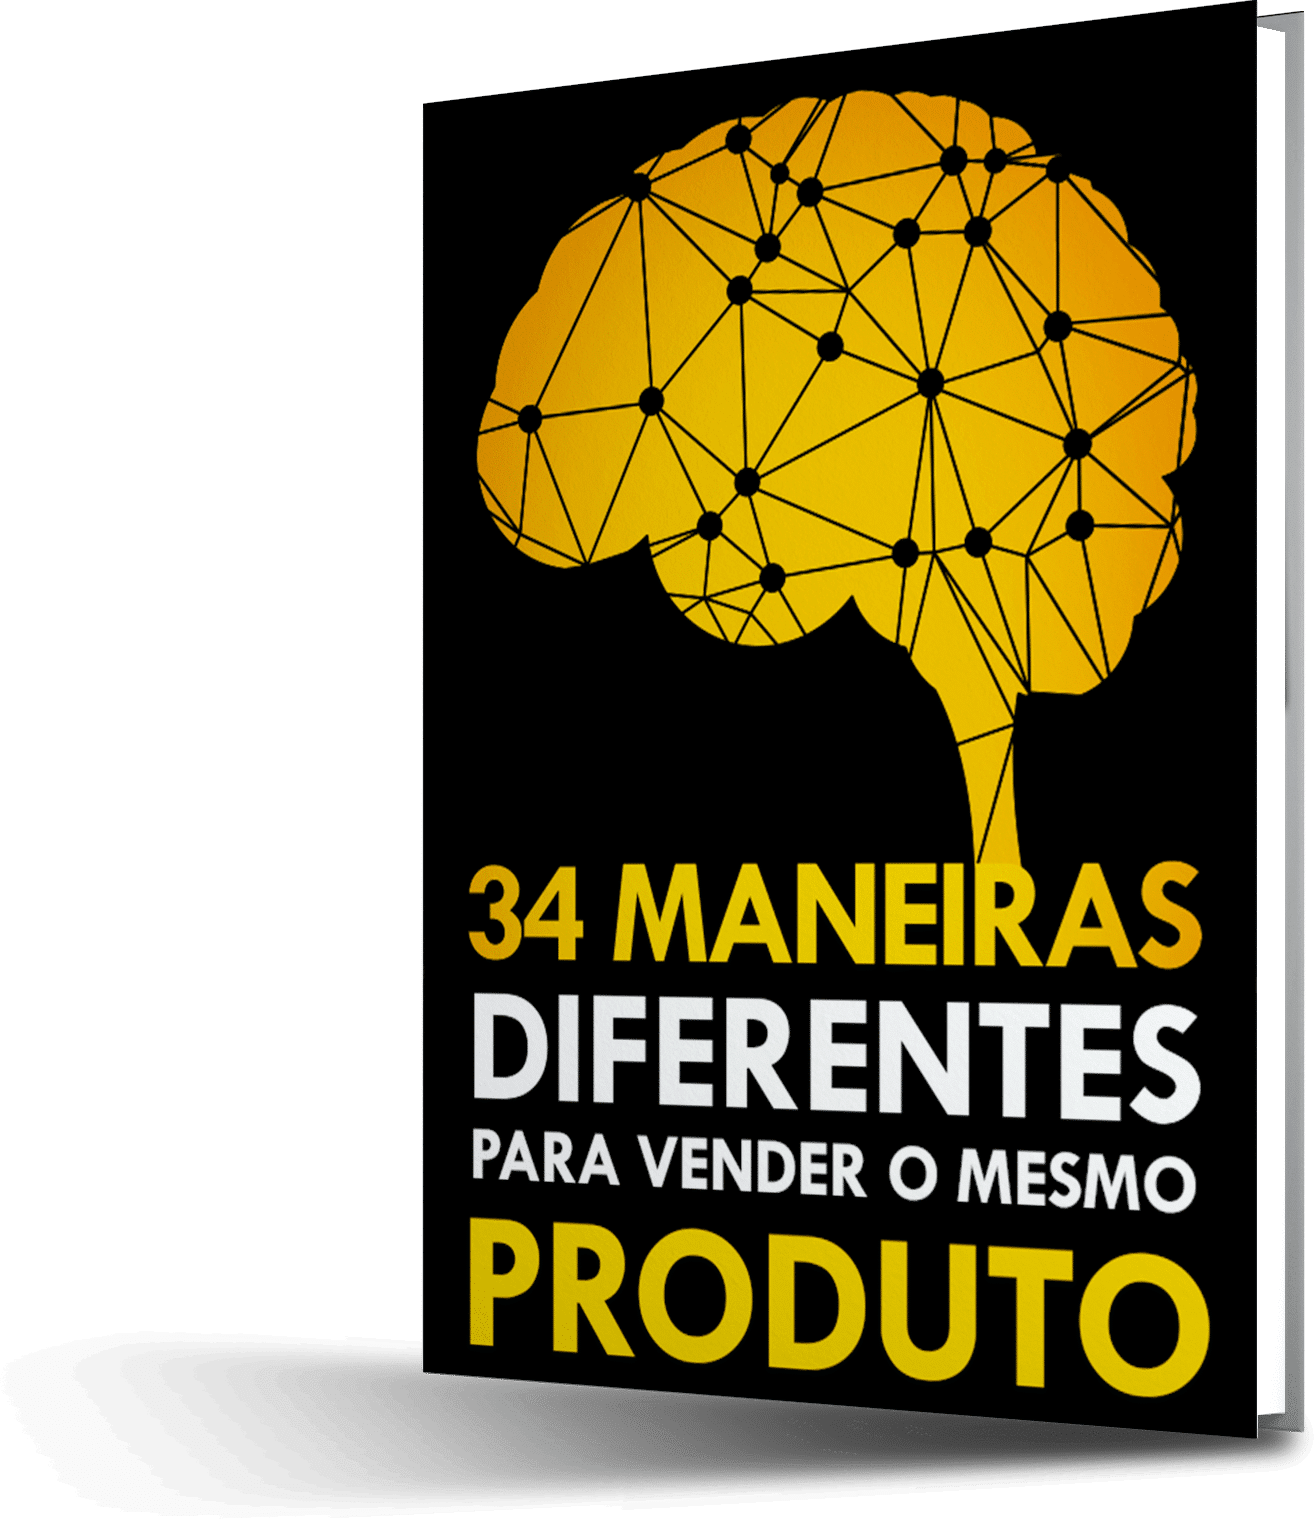 34 maneiras 3 - Workshop + PDF - Imã 34 MANEIRAS DIFERENTES PARA VENDER O MESMO PRODUTO